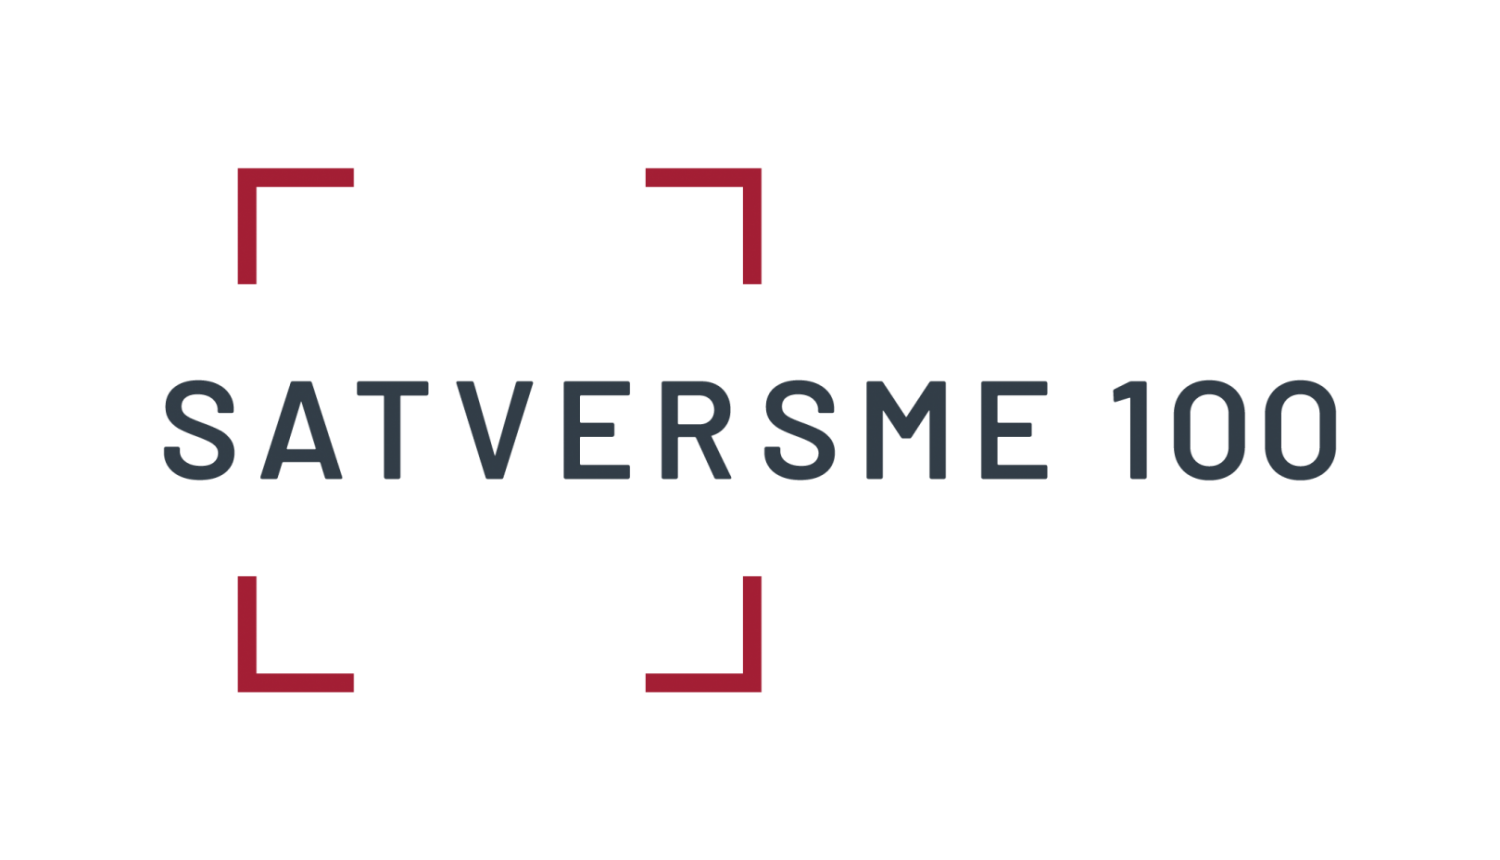 Satversmei 100 logo